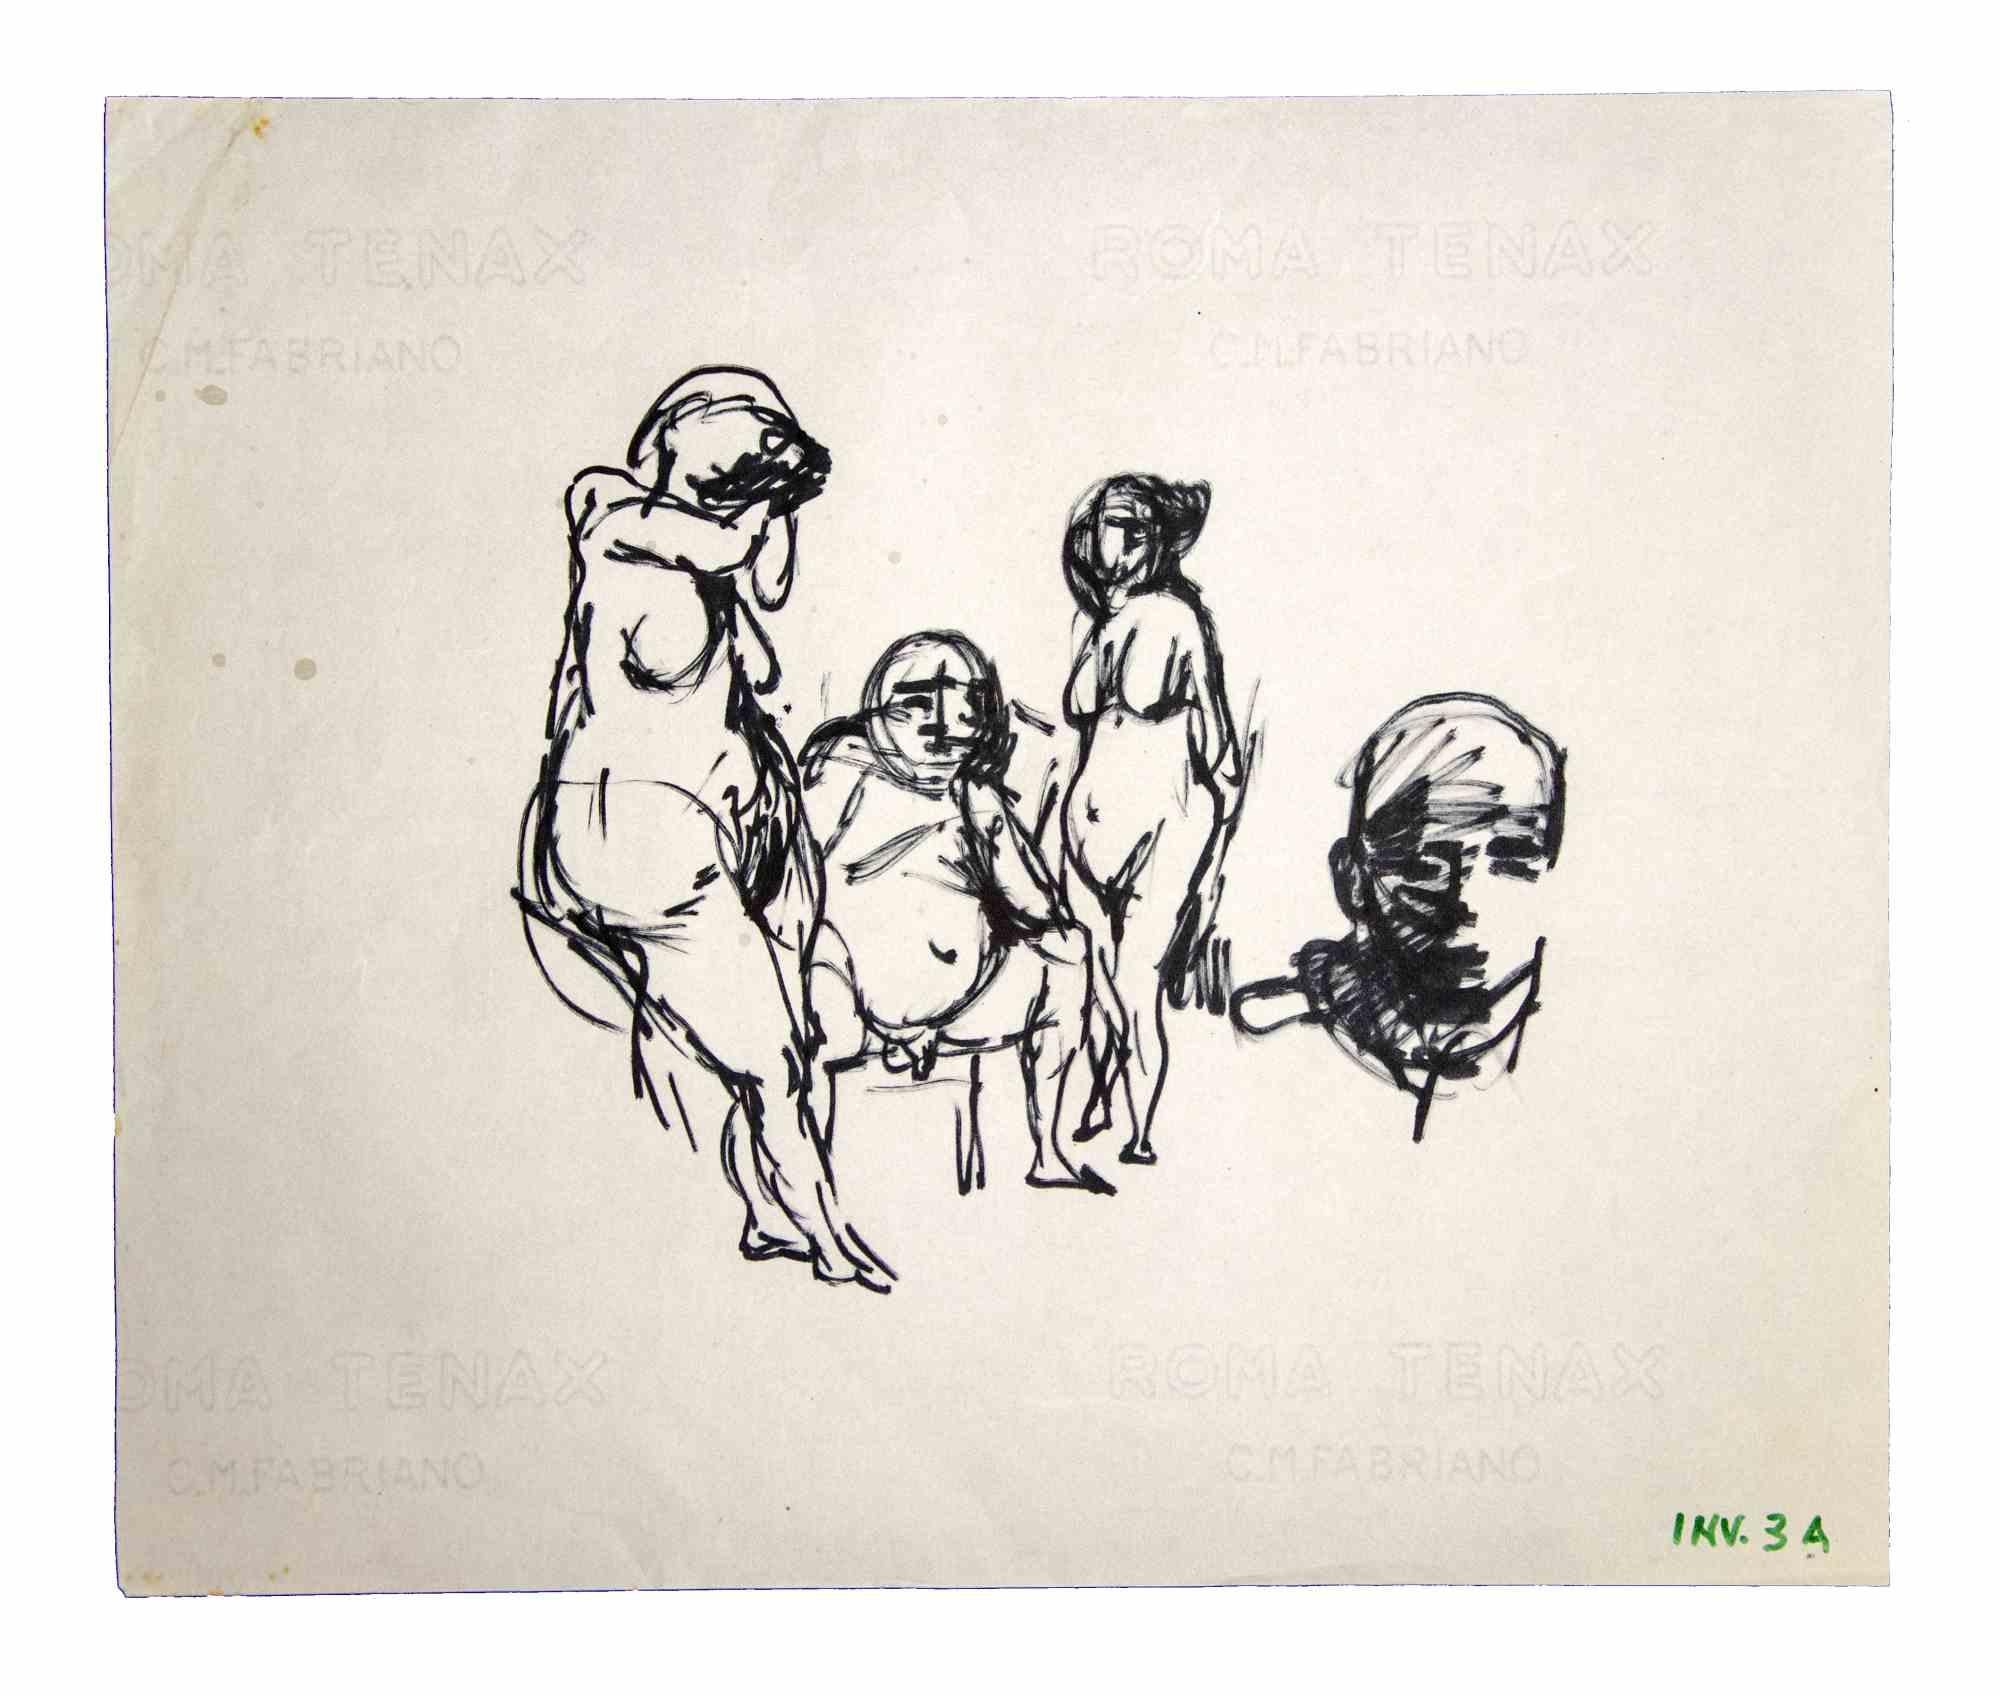 Posing Figures Sketch - Drawings by Leo Guida - 1970s